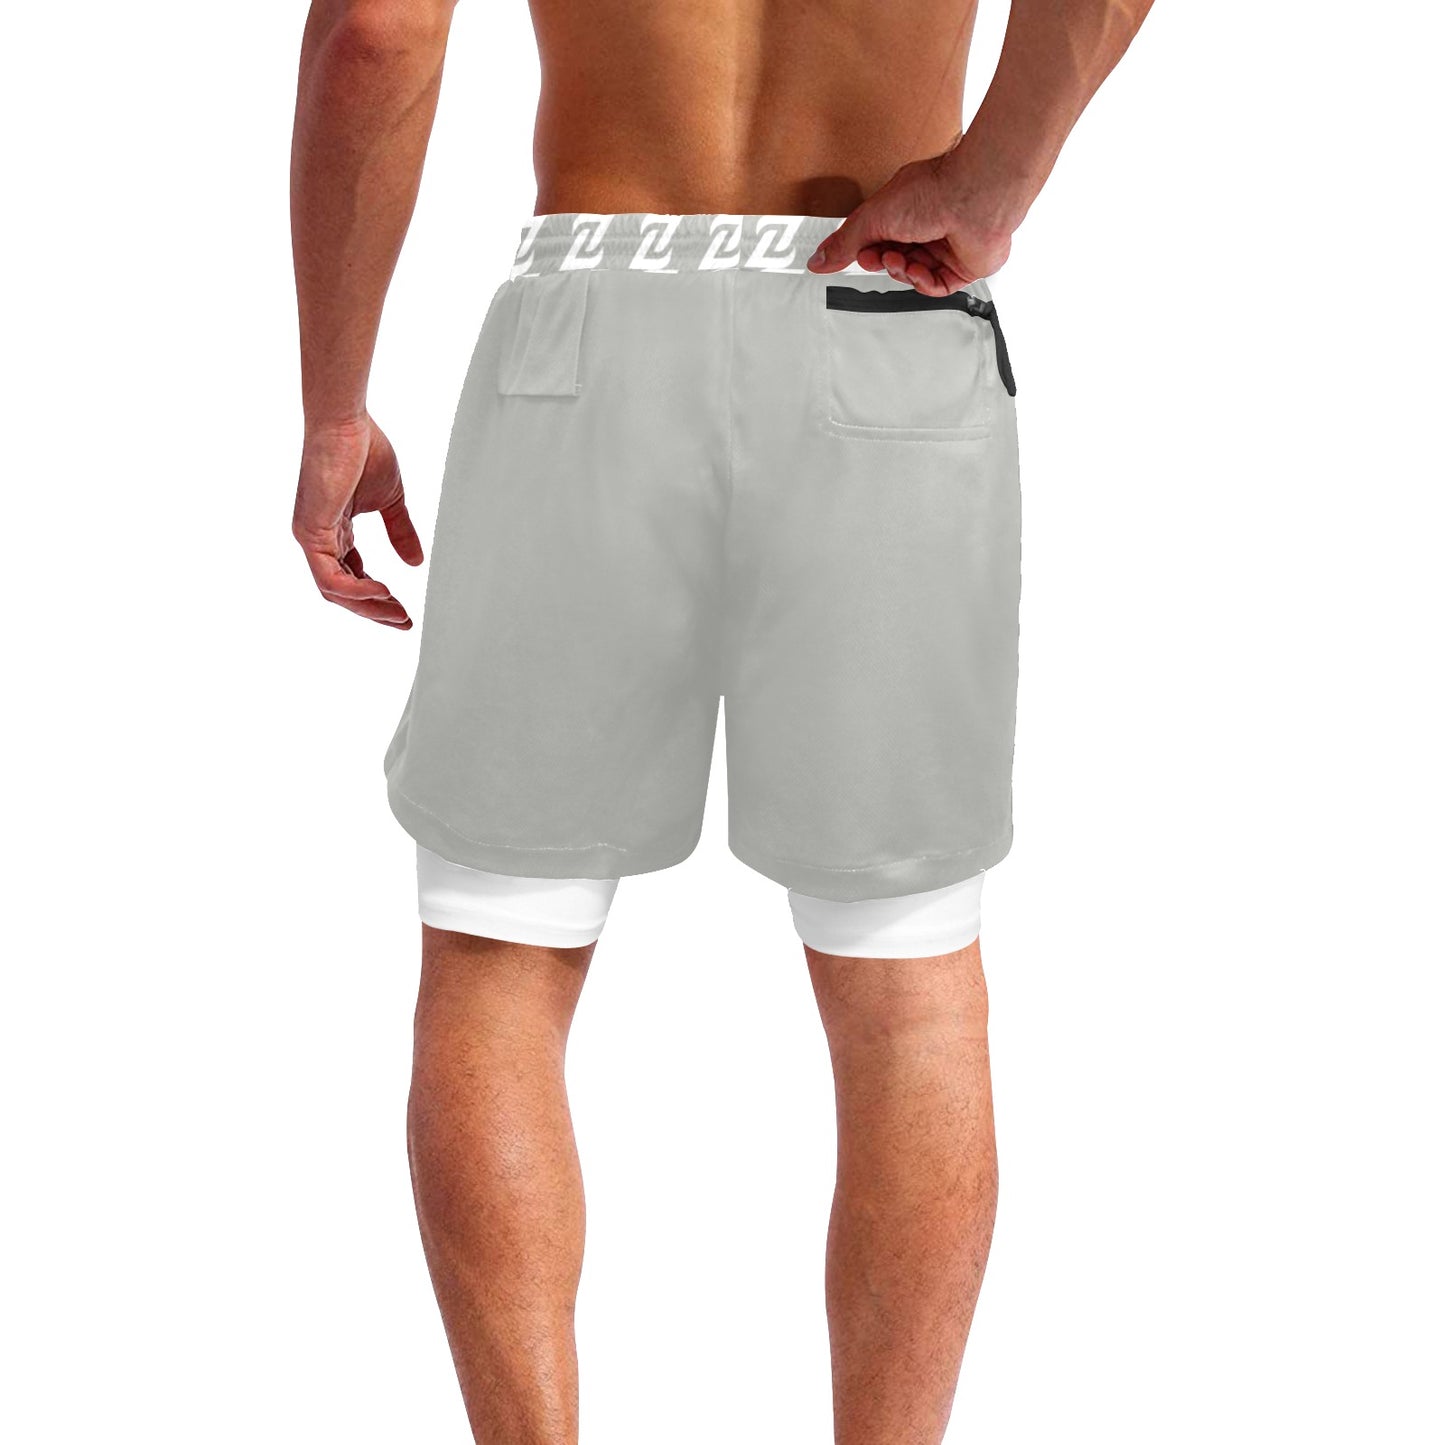 Zen Shorts with Liner - Zen Gray